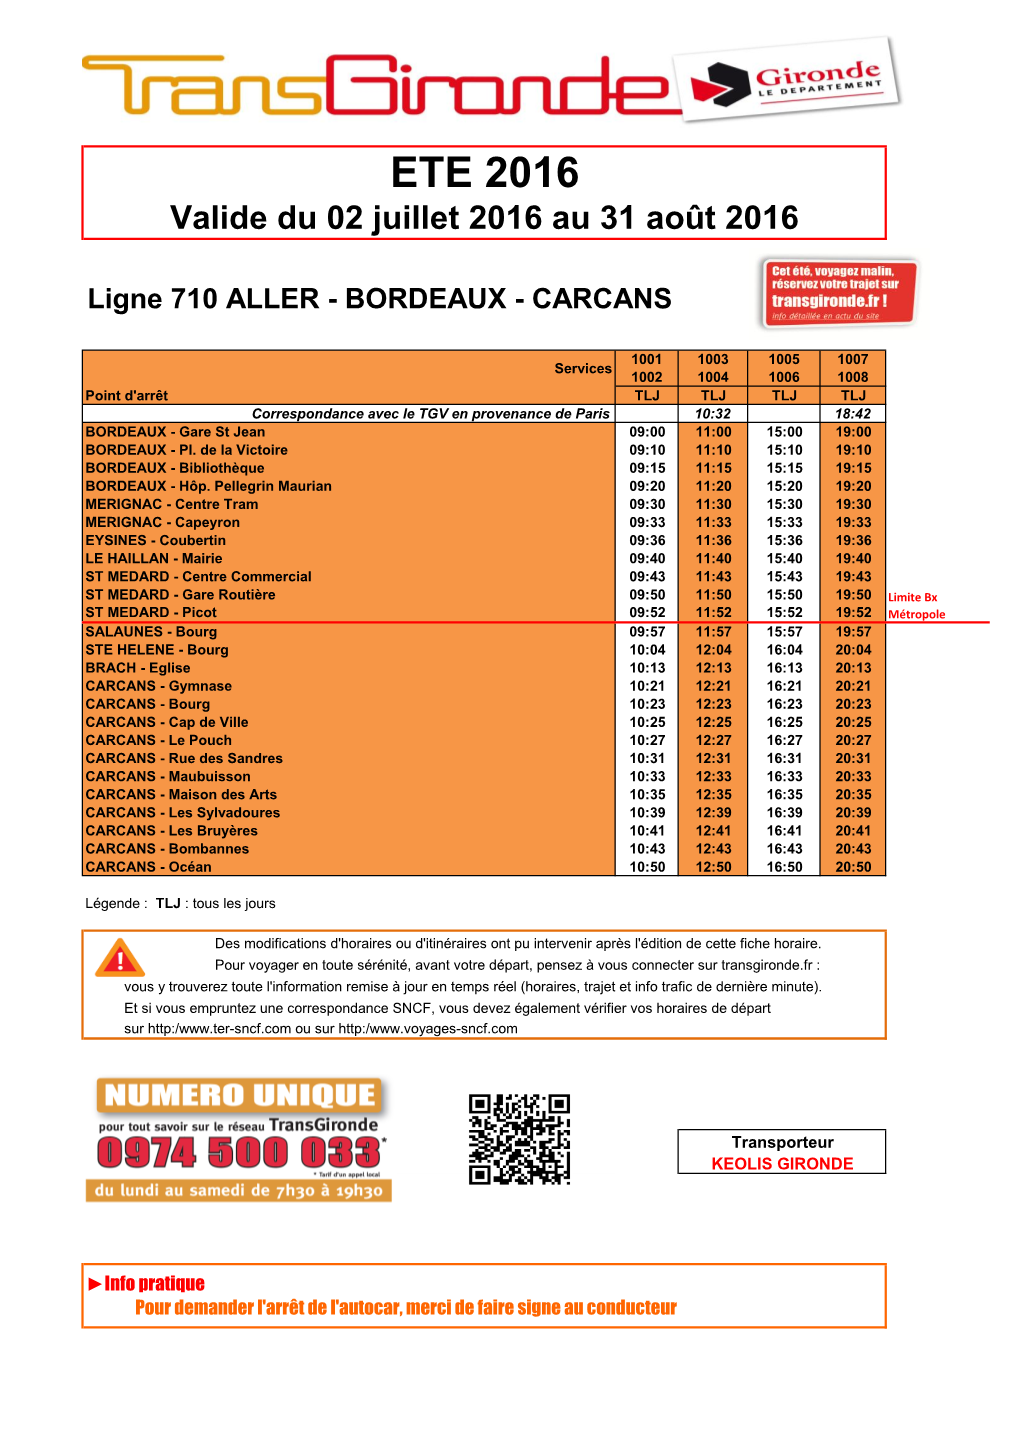 Ligne 710 ALLER - BORDEAUX - CARCANS